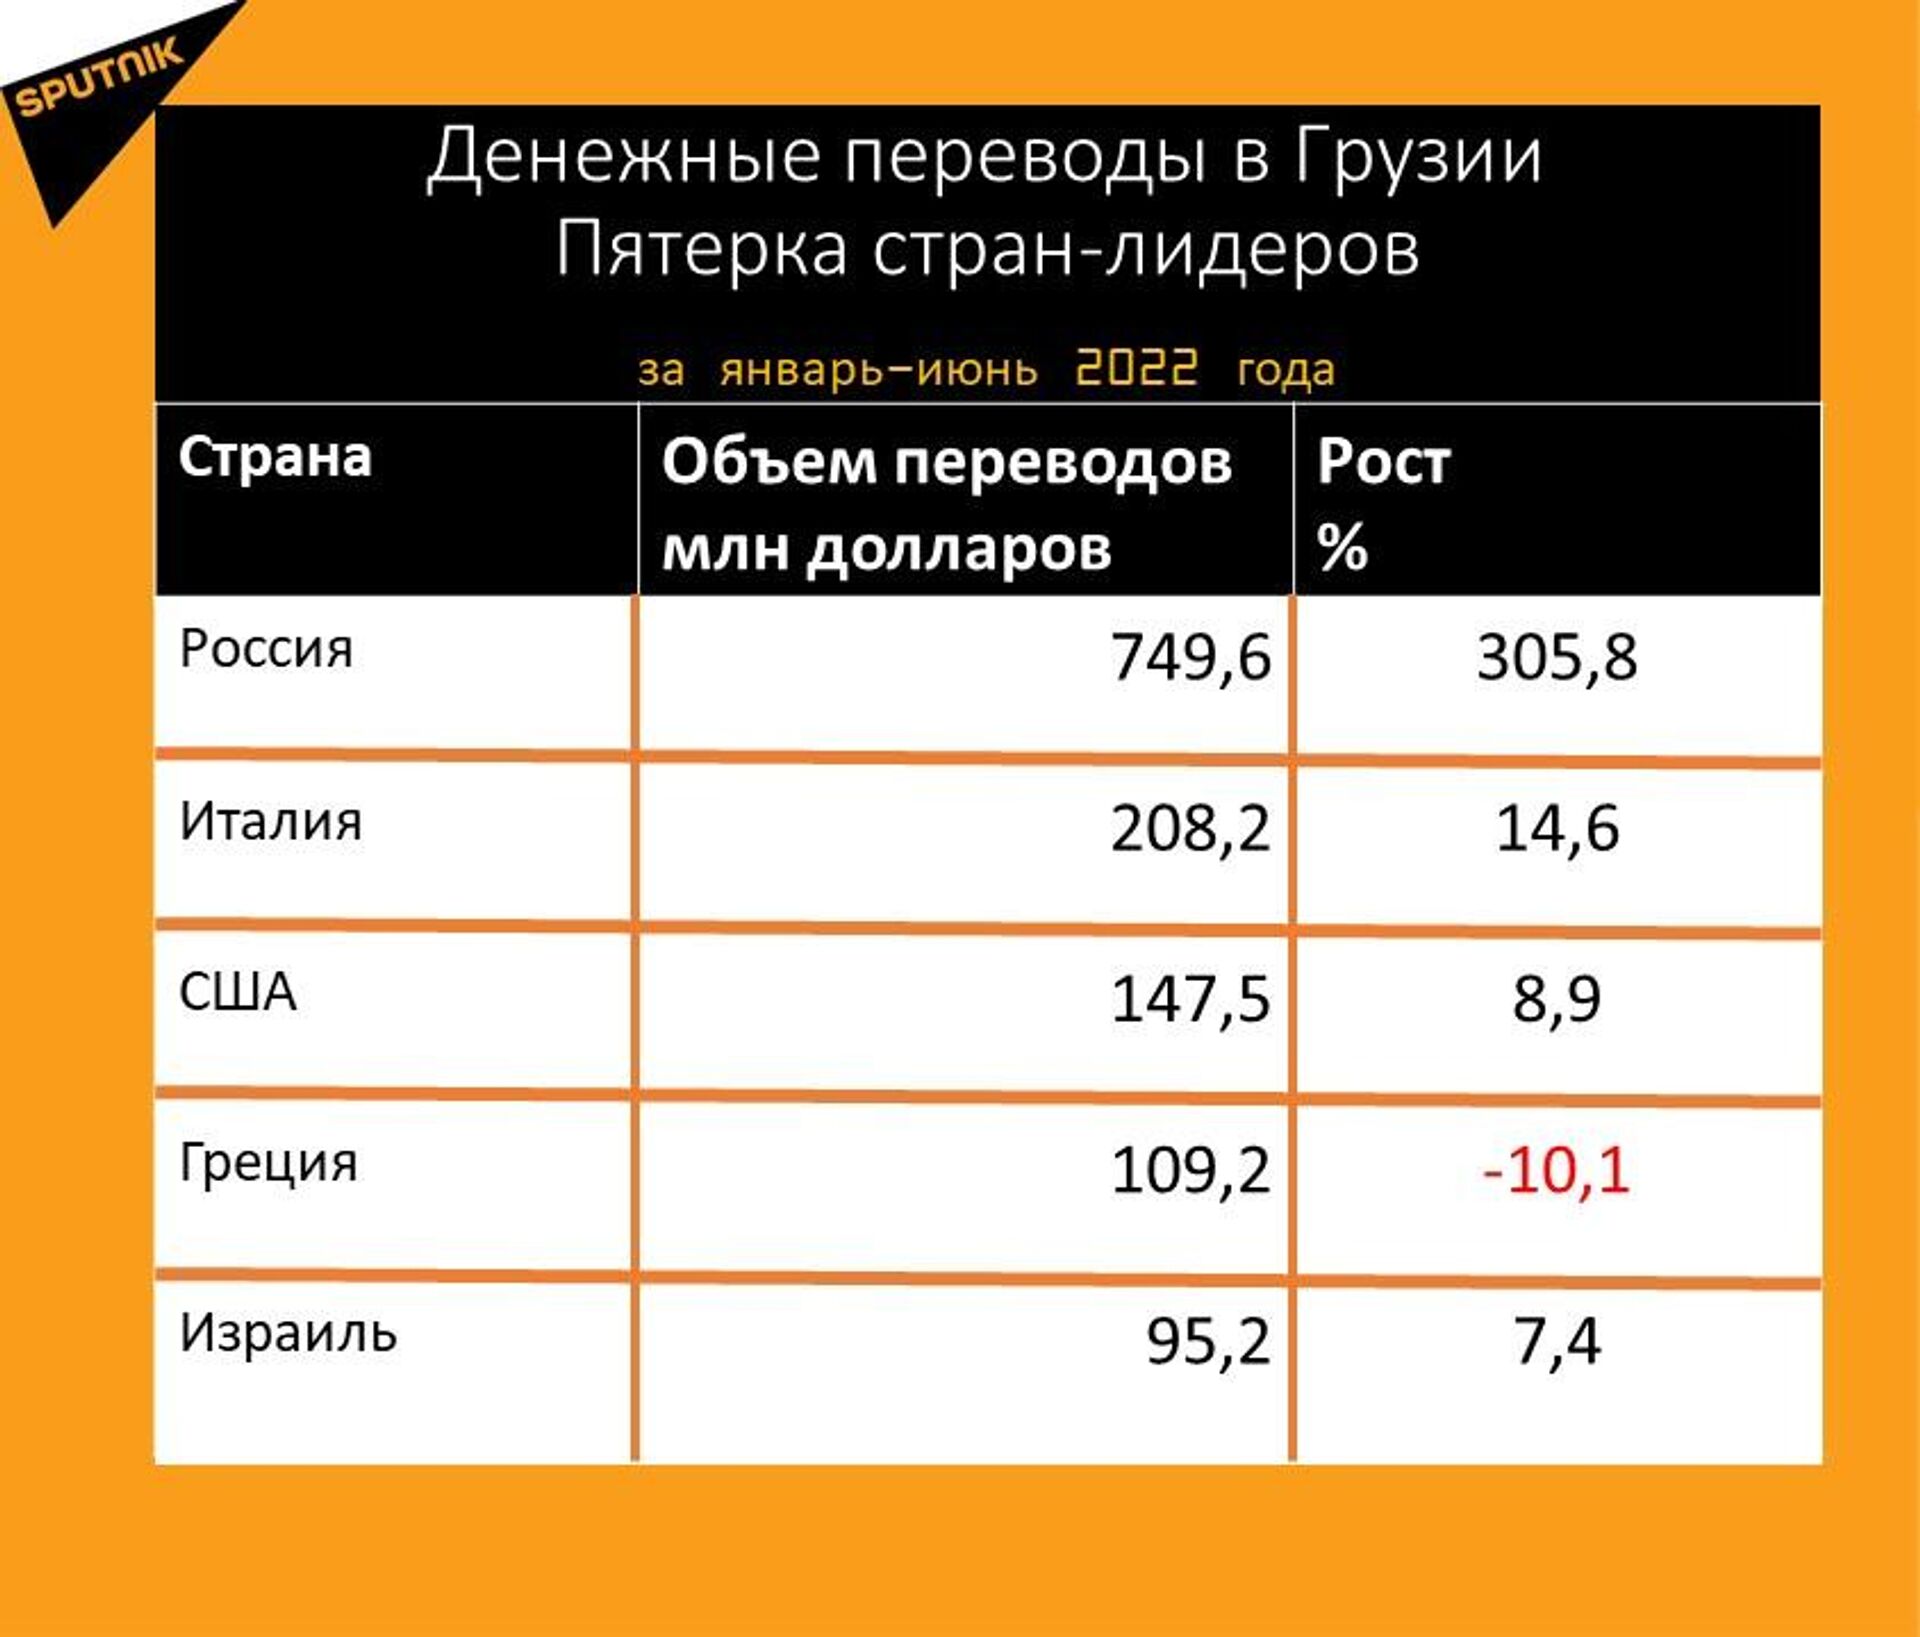 Статистика денежных переводов в Грузию за январь-июнь 2022 года - Sputnik Грузия, 1920, 15.07.2022